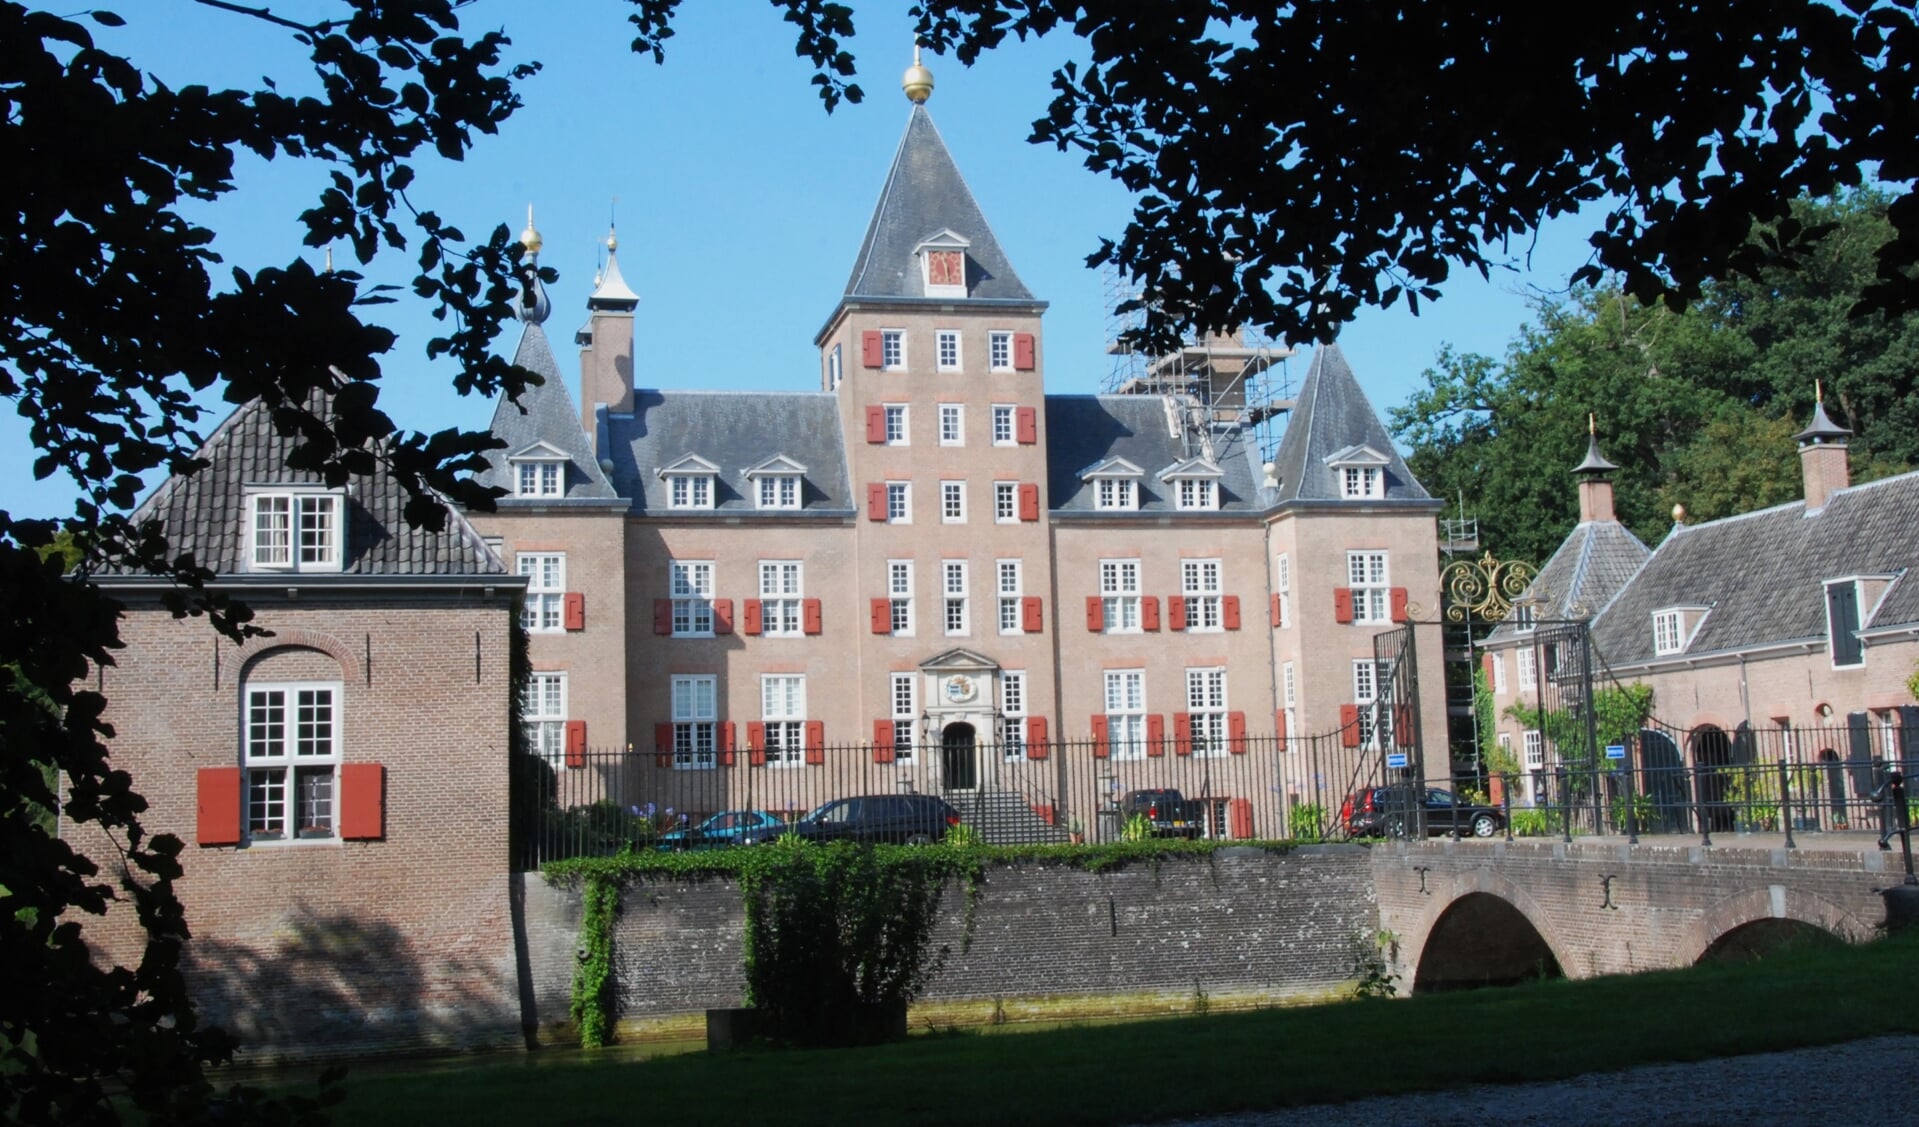 De blauwe kamer en de keuken van het kasteel zijn ook te bezichtigen. Op het Kasteelplein zijn Oudhollandse spelen.